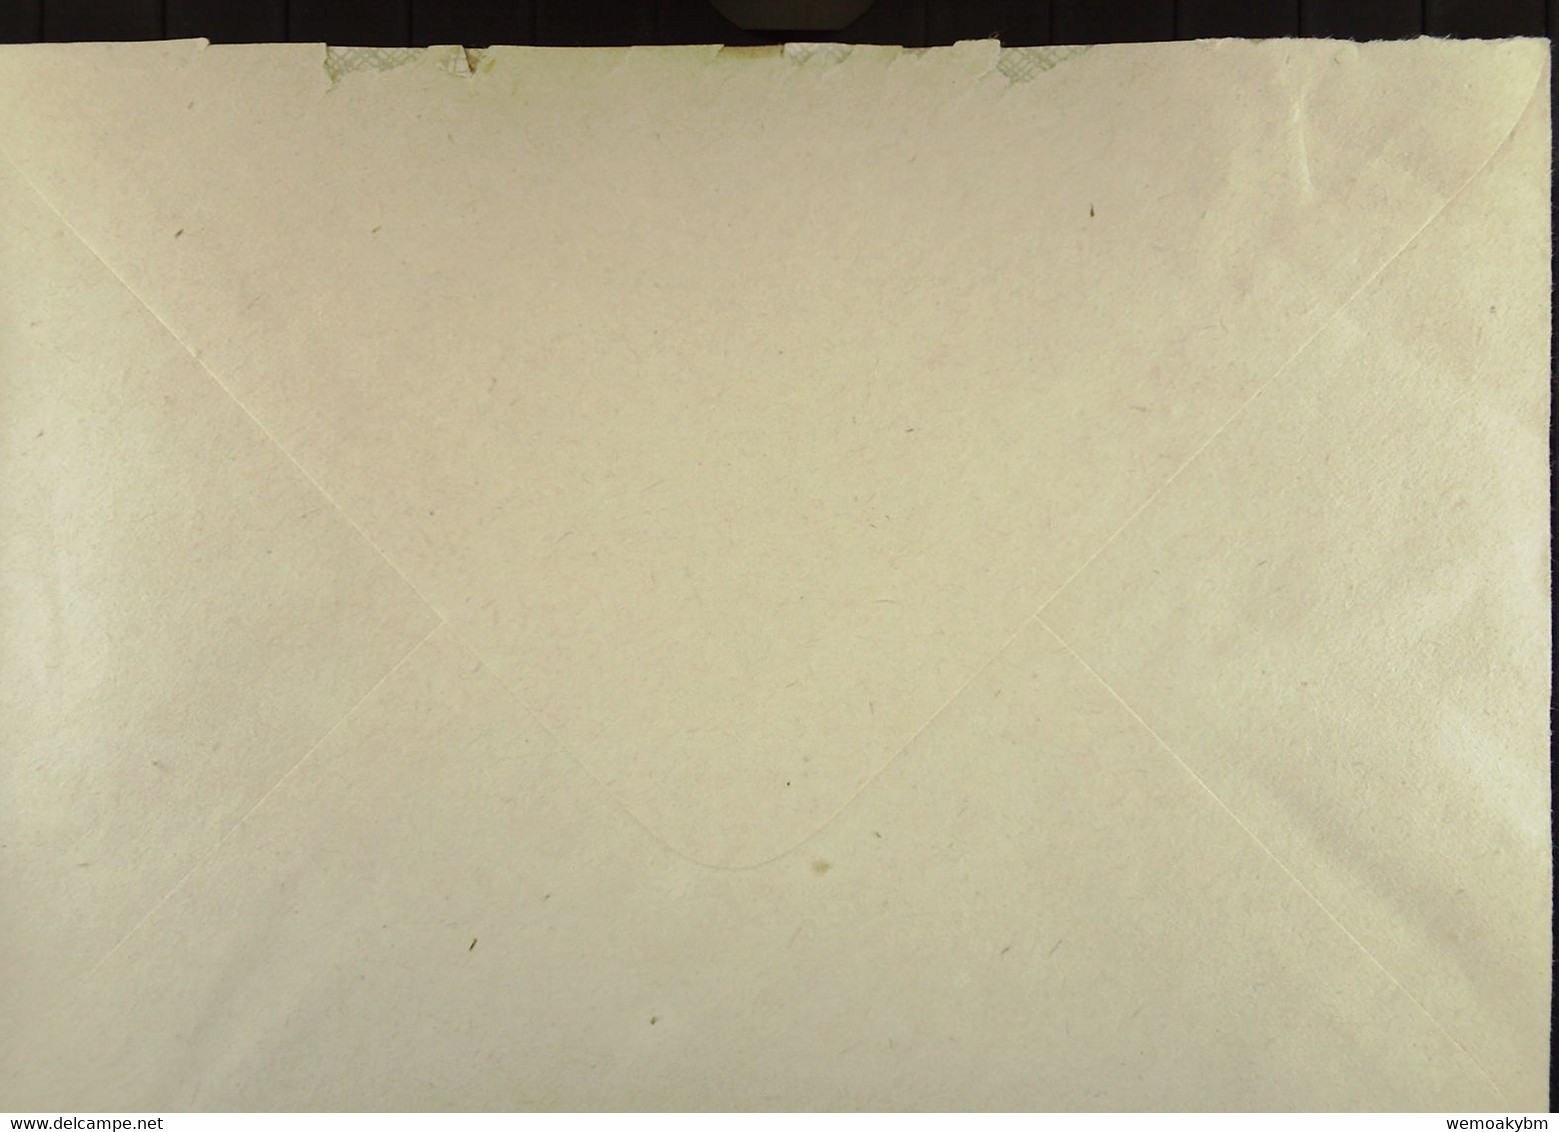 Orts-Brief Mit ZKD-Kastenstempel "Rat Des Kreises 755 LÜBBEN" V. "35.4.67" Angekommen Aber Am 25. MRZ. 1966 Lt. Eing-Stp - Central Mail Service